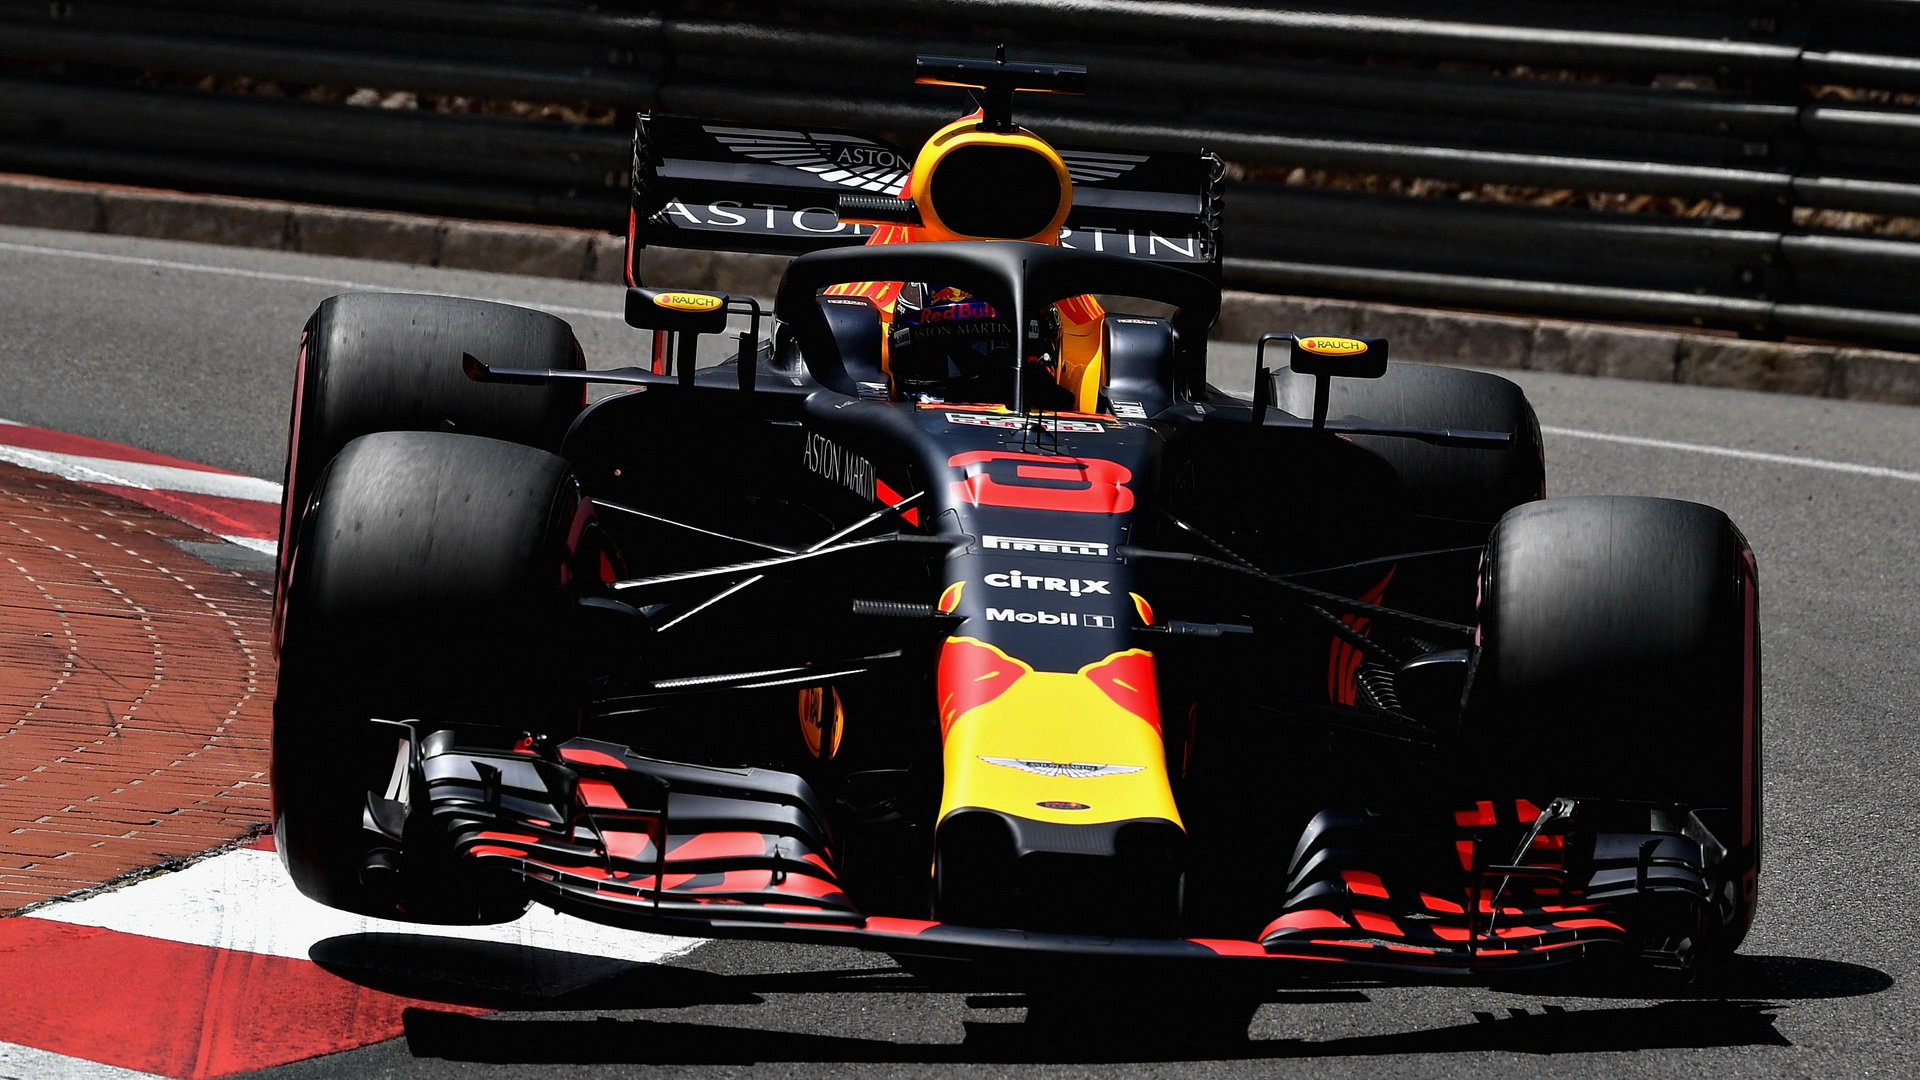 Daniel Ricciardo v kvalifikaci v Monaku překonal absolutní rekord městského okruhu